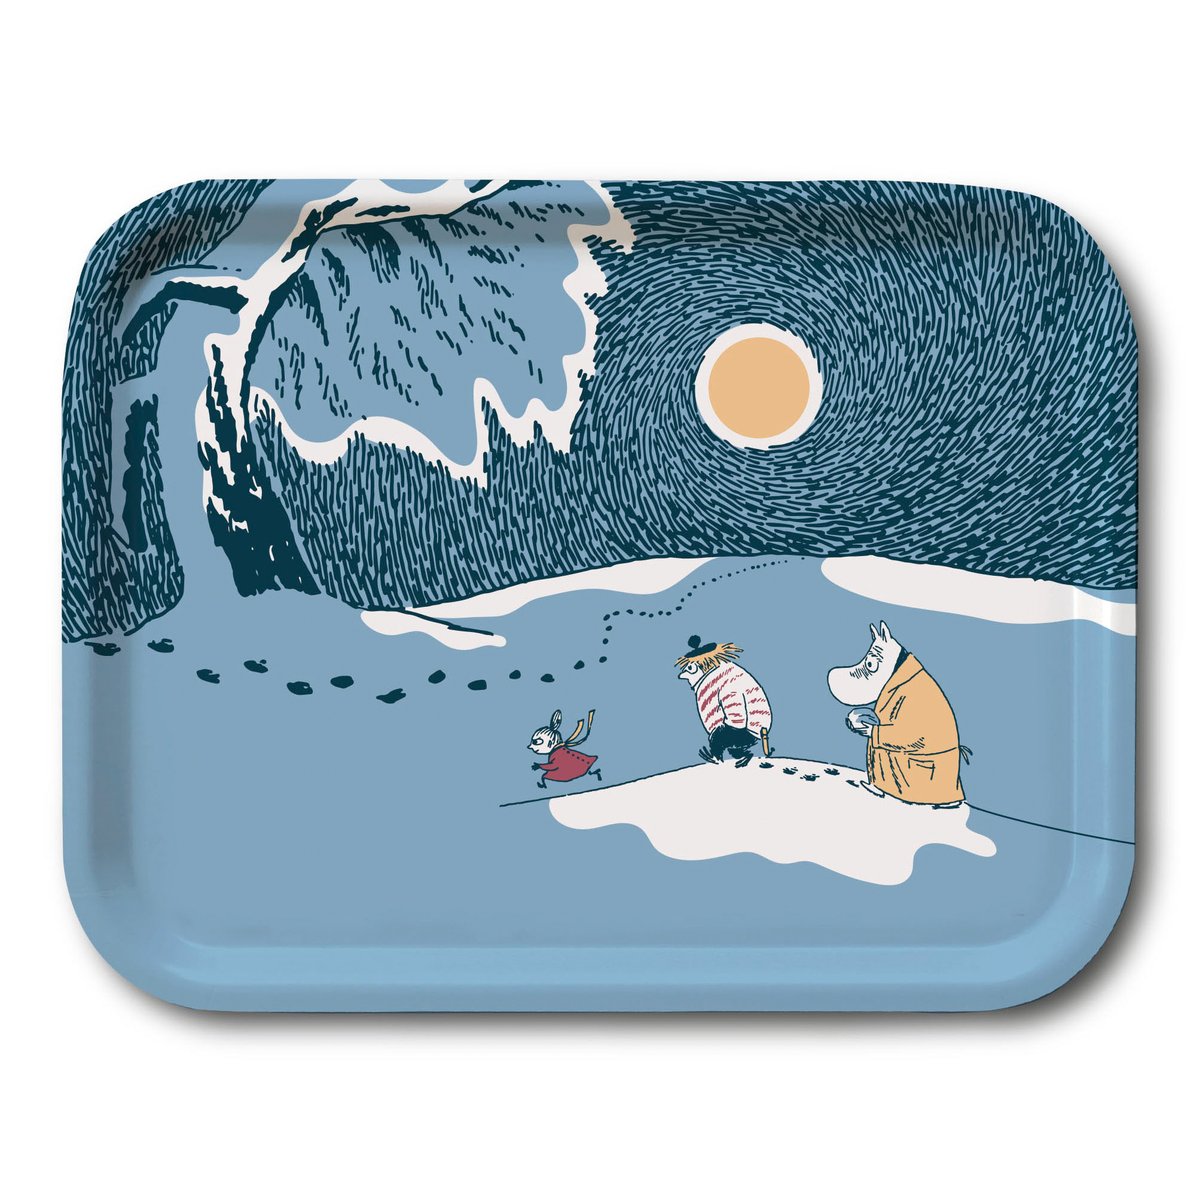 Opto Design Snow Moonlight Mumi bakke vinter 2021 20×27 cm
​